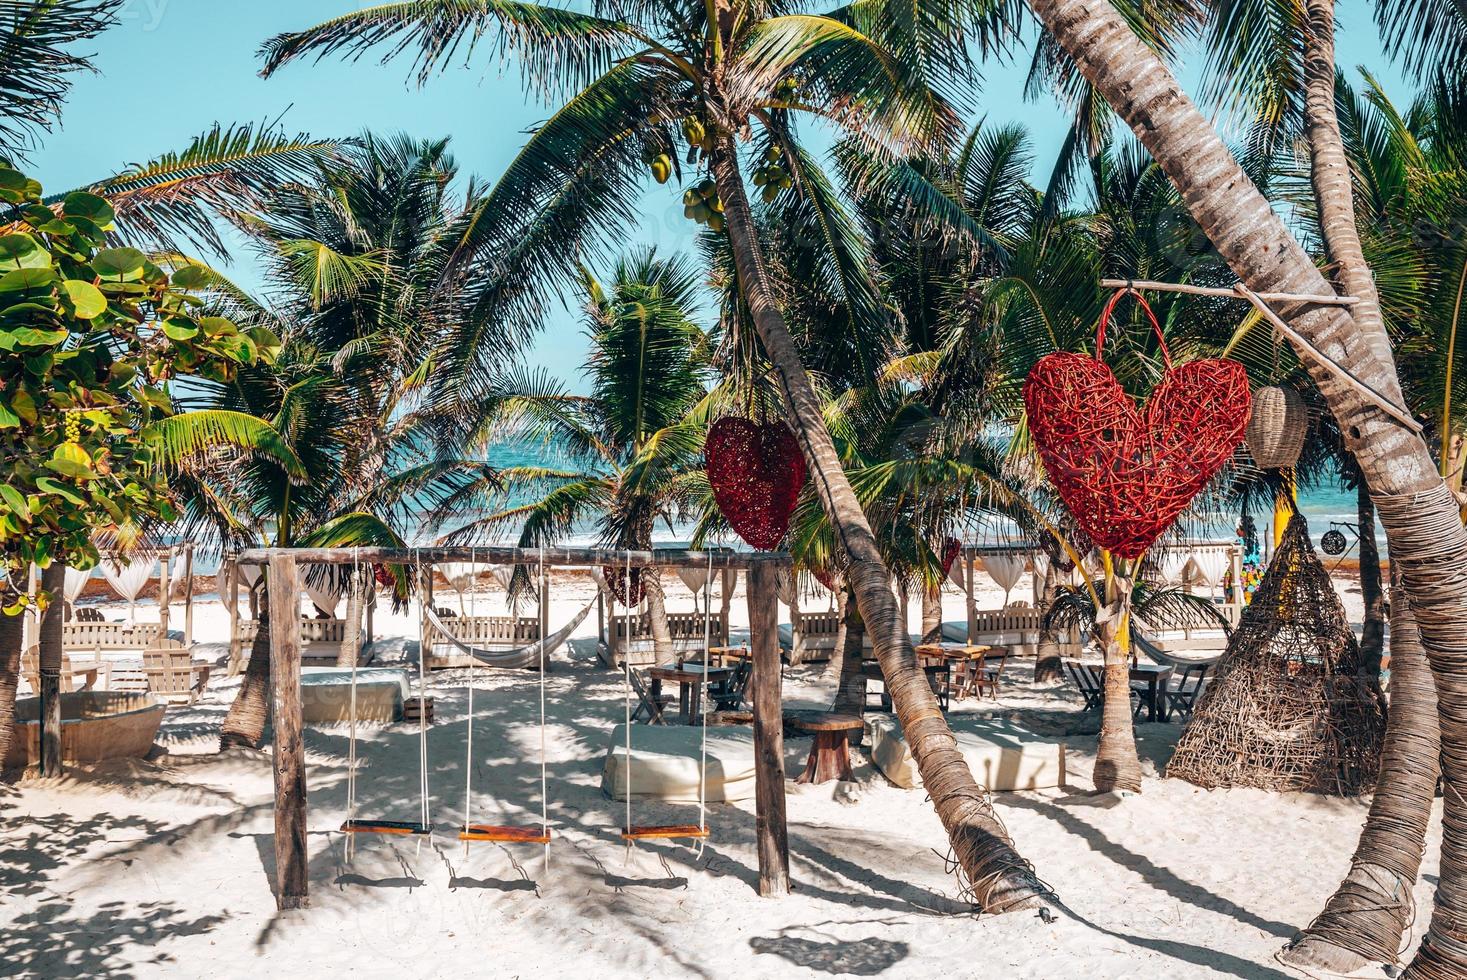 balanço vazio com objeto em forma de coração pendurado em uma árvore no resort de praia foto